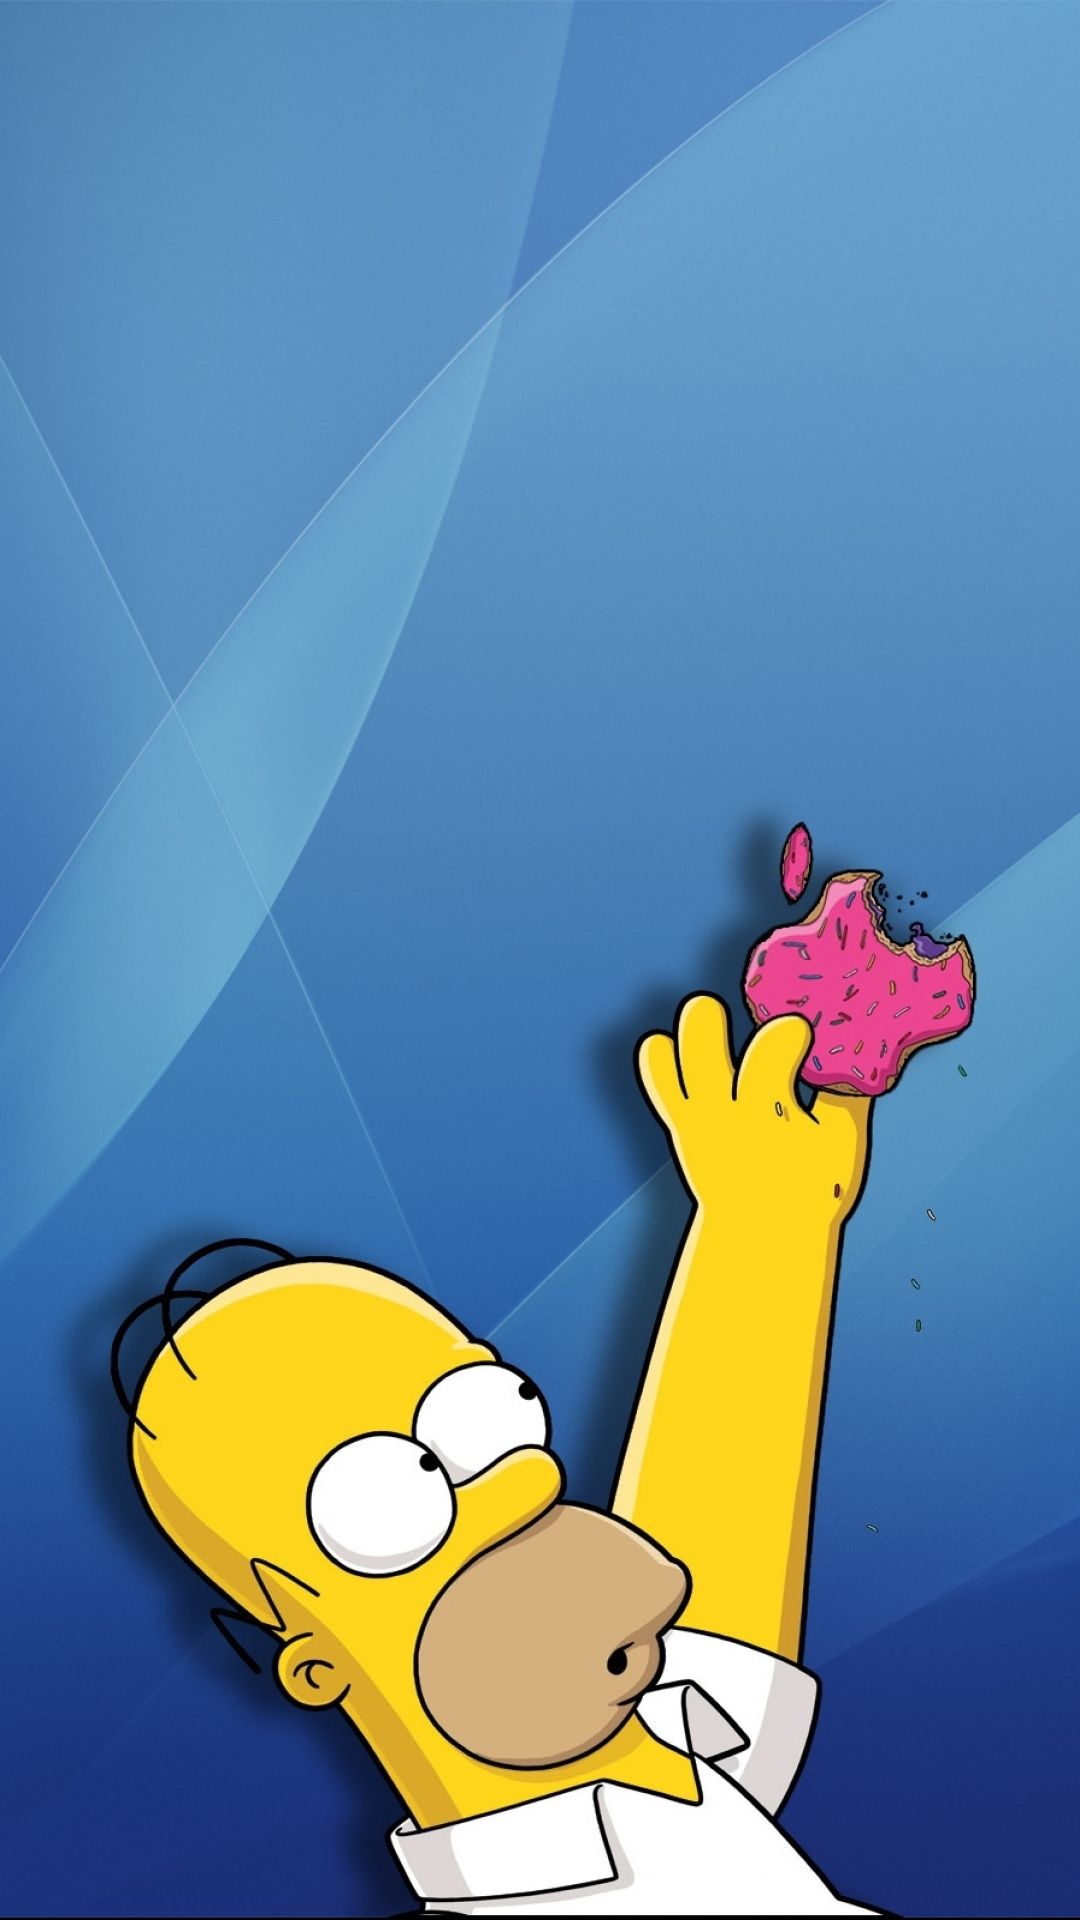 The Simpsons Wallpapers Descargar en alta resolución y calidad | Гараж